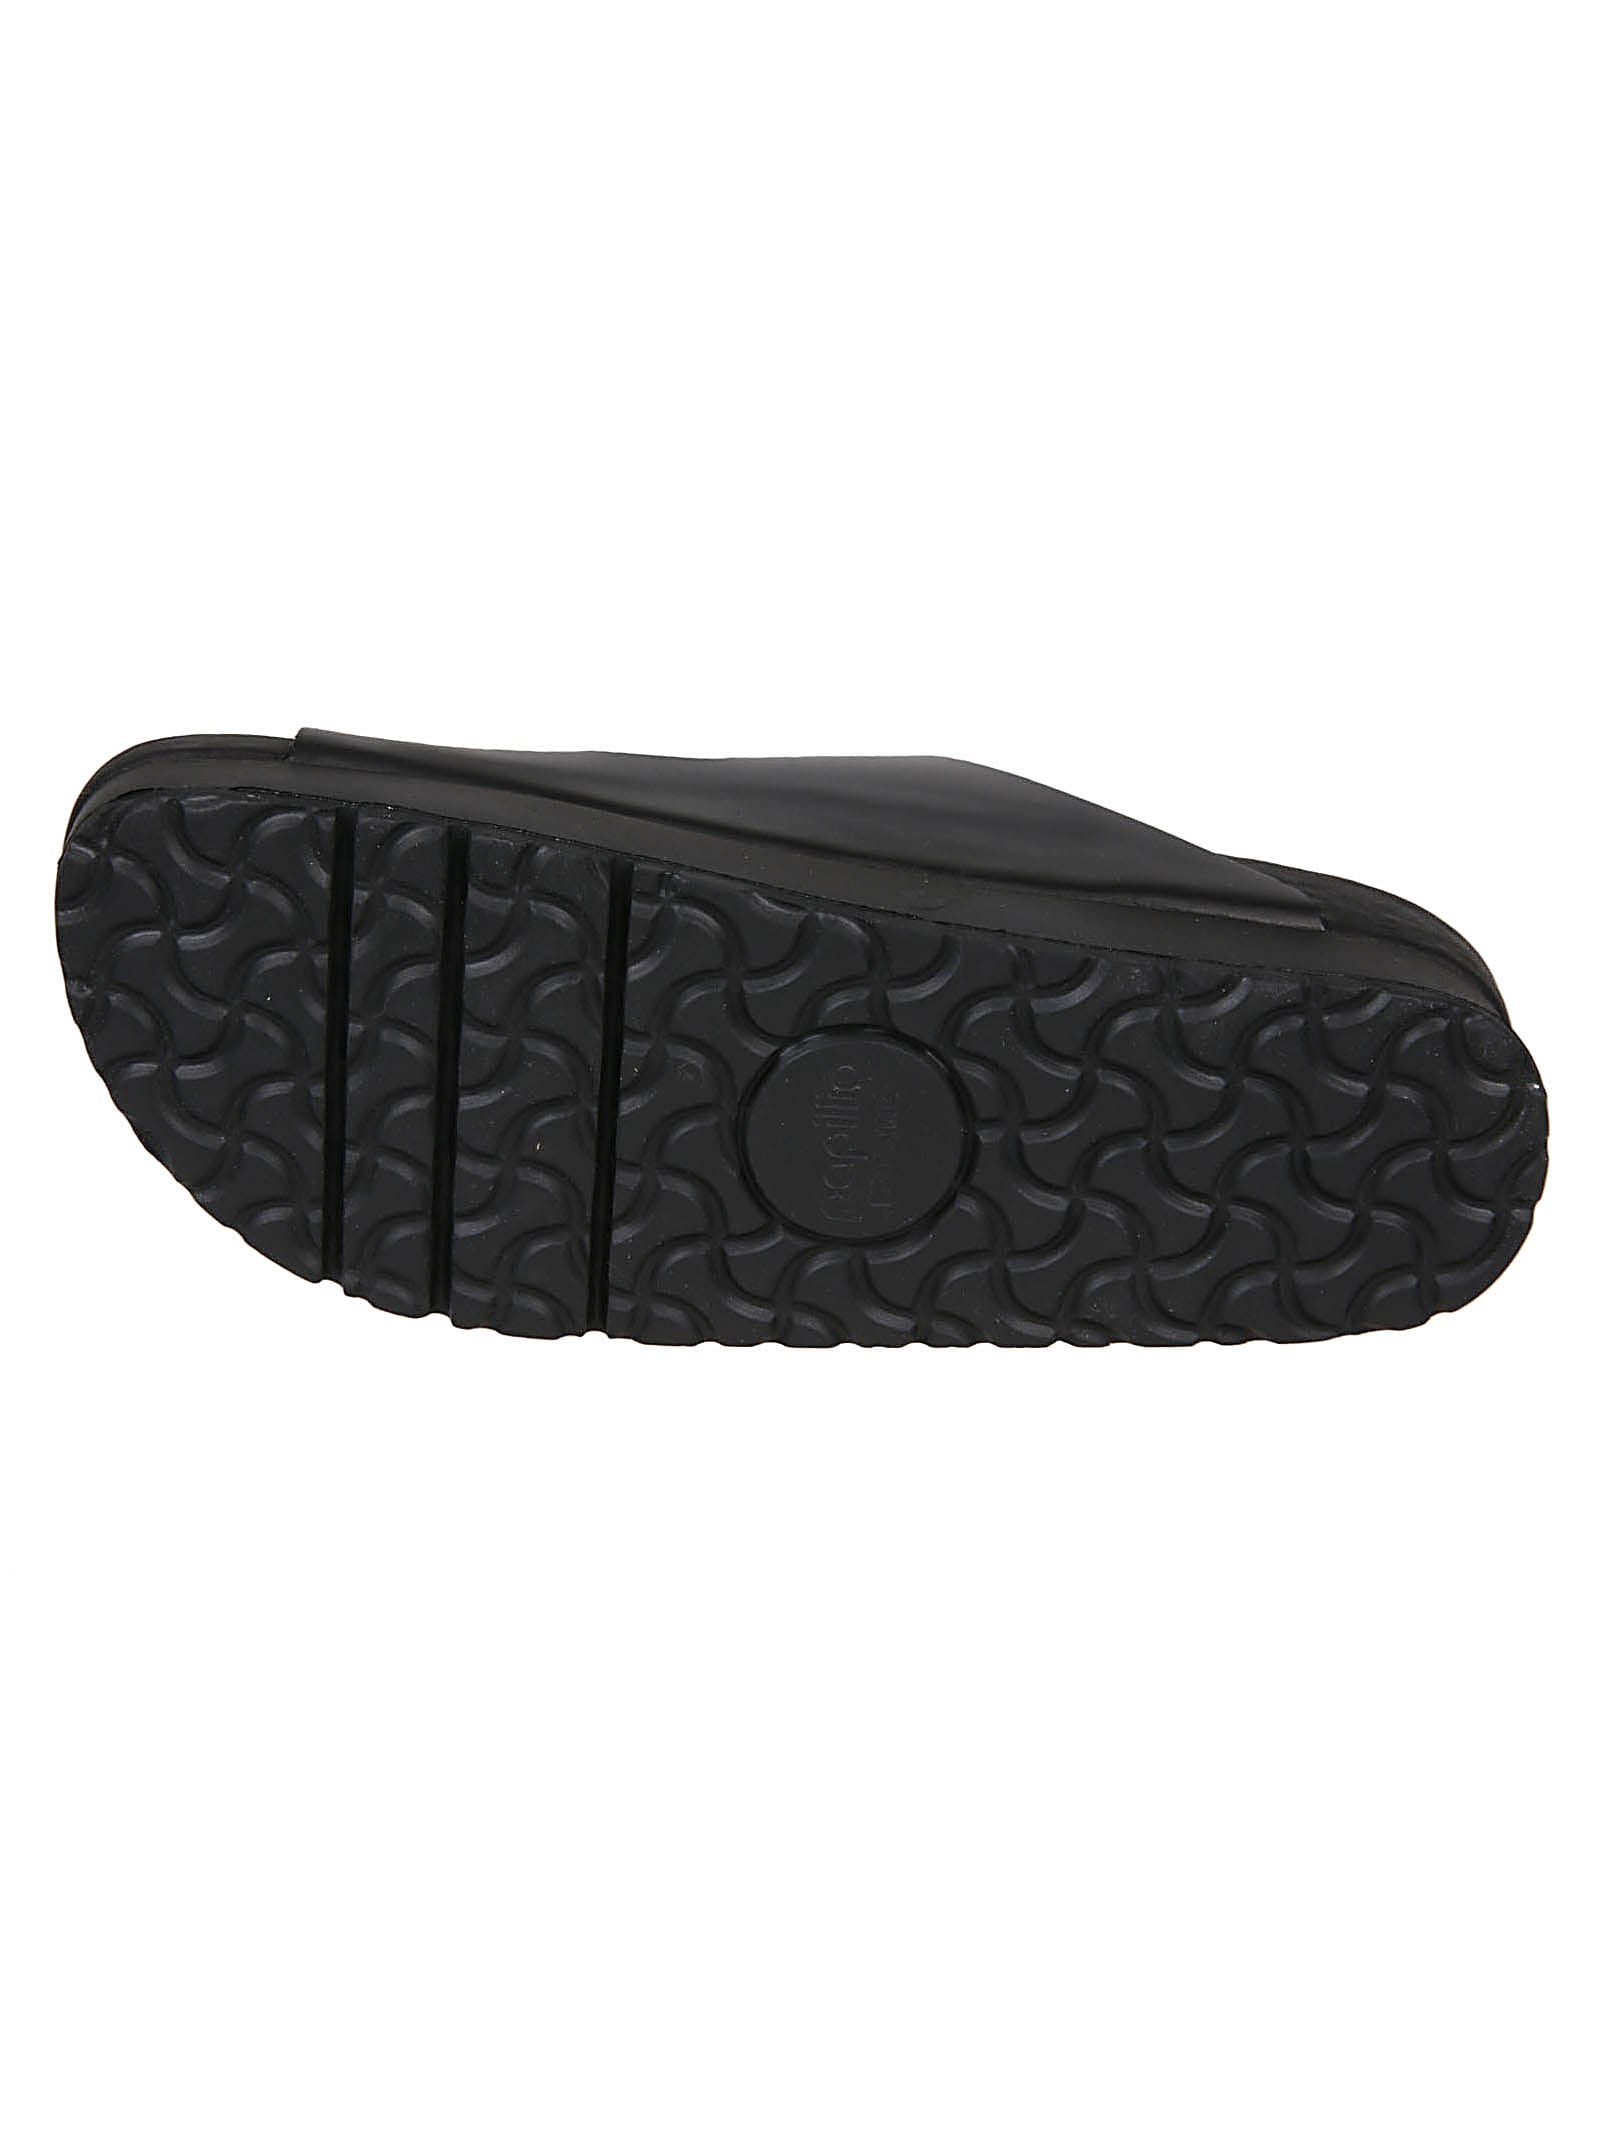 Shop Birkenstock Arizona Plat Exquisite Sandals In Black